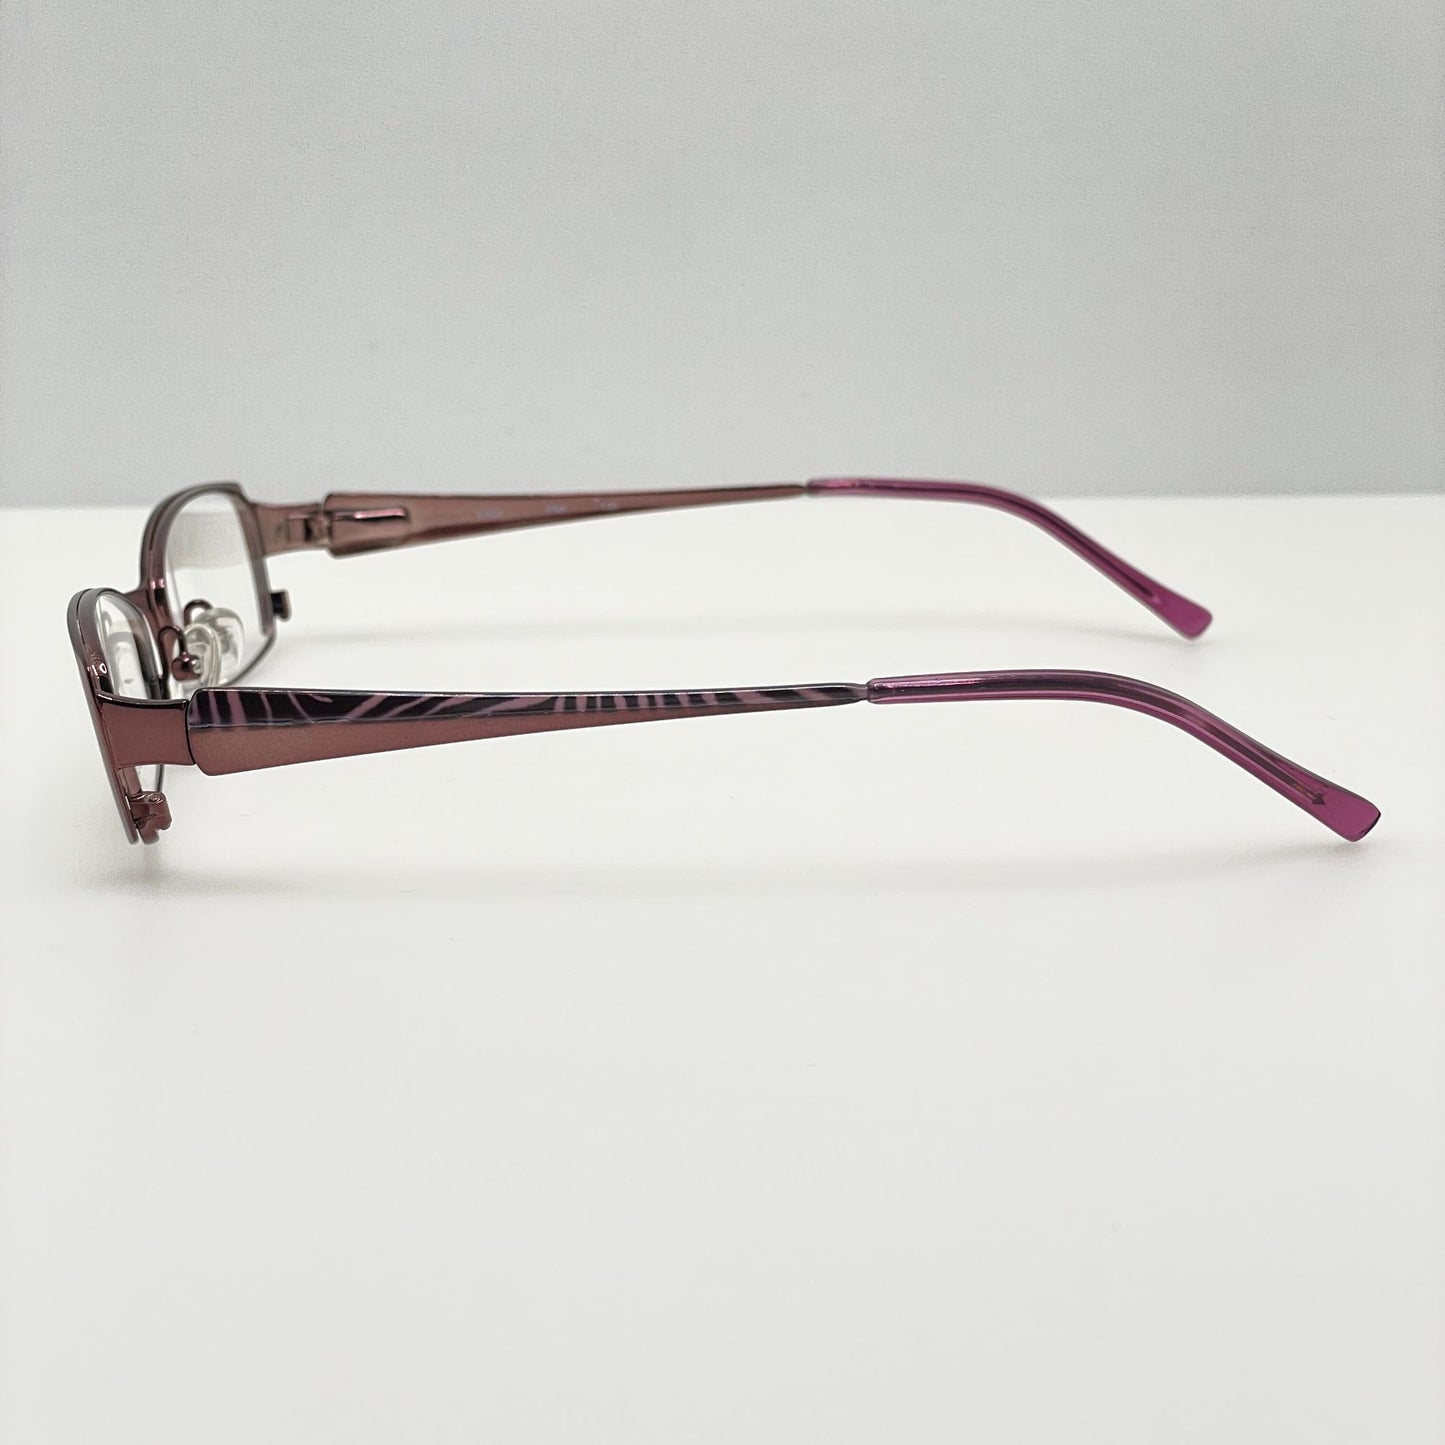 Kay Unger Eyeglasses Eye Glasses Frames K506 PNK 50-17-135